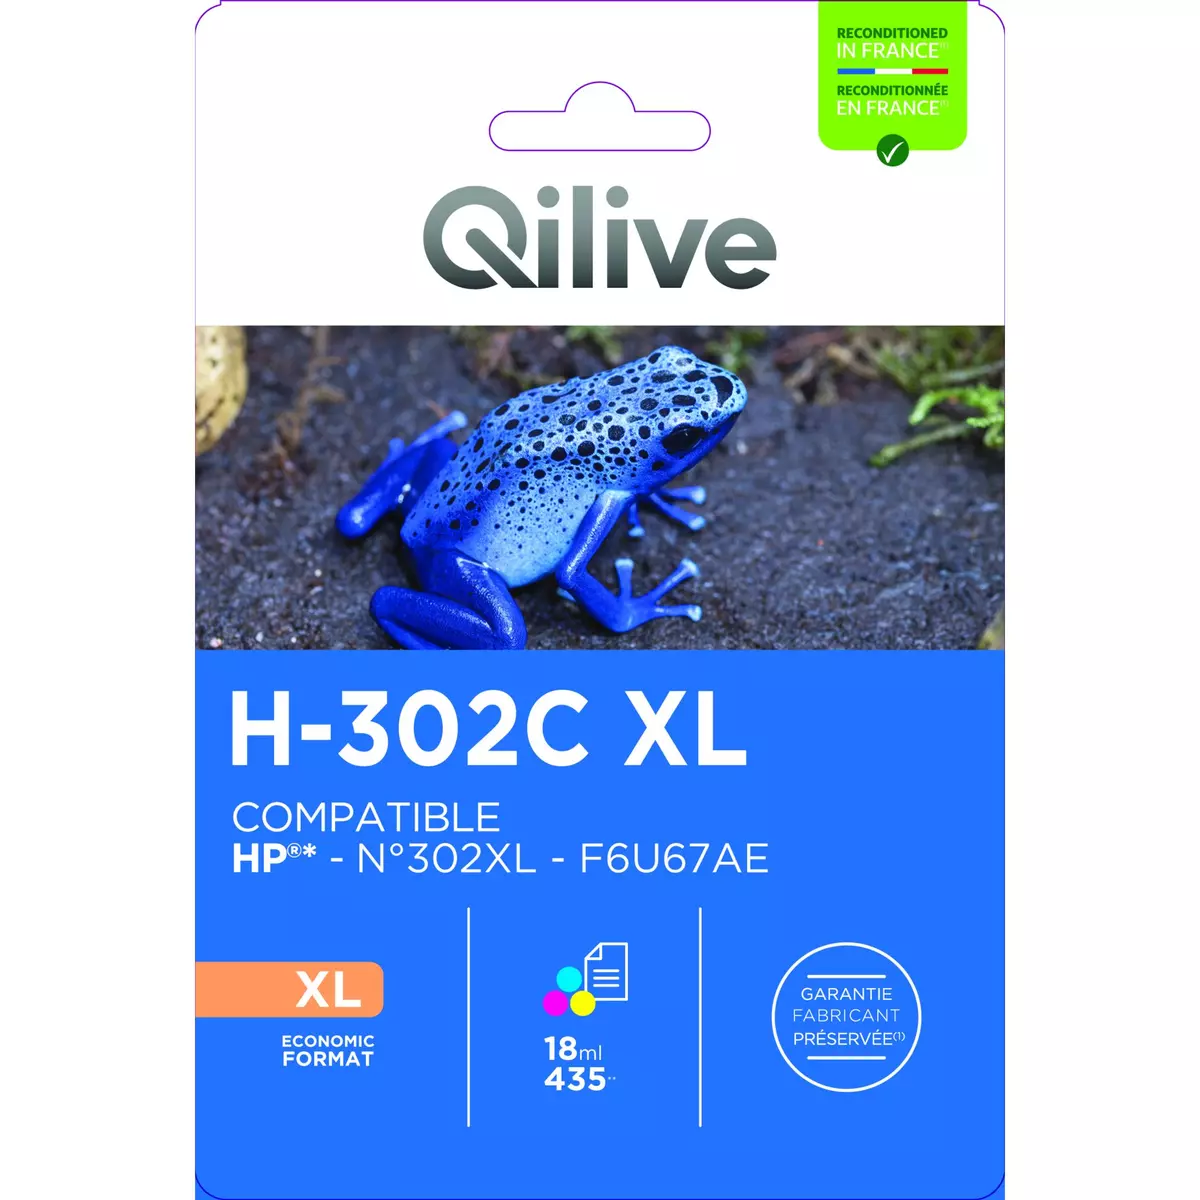 QILIVE Cartouche CL H-302C XL